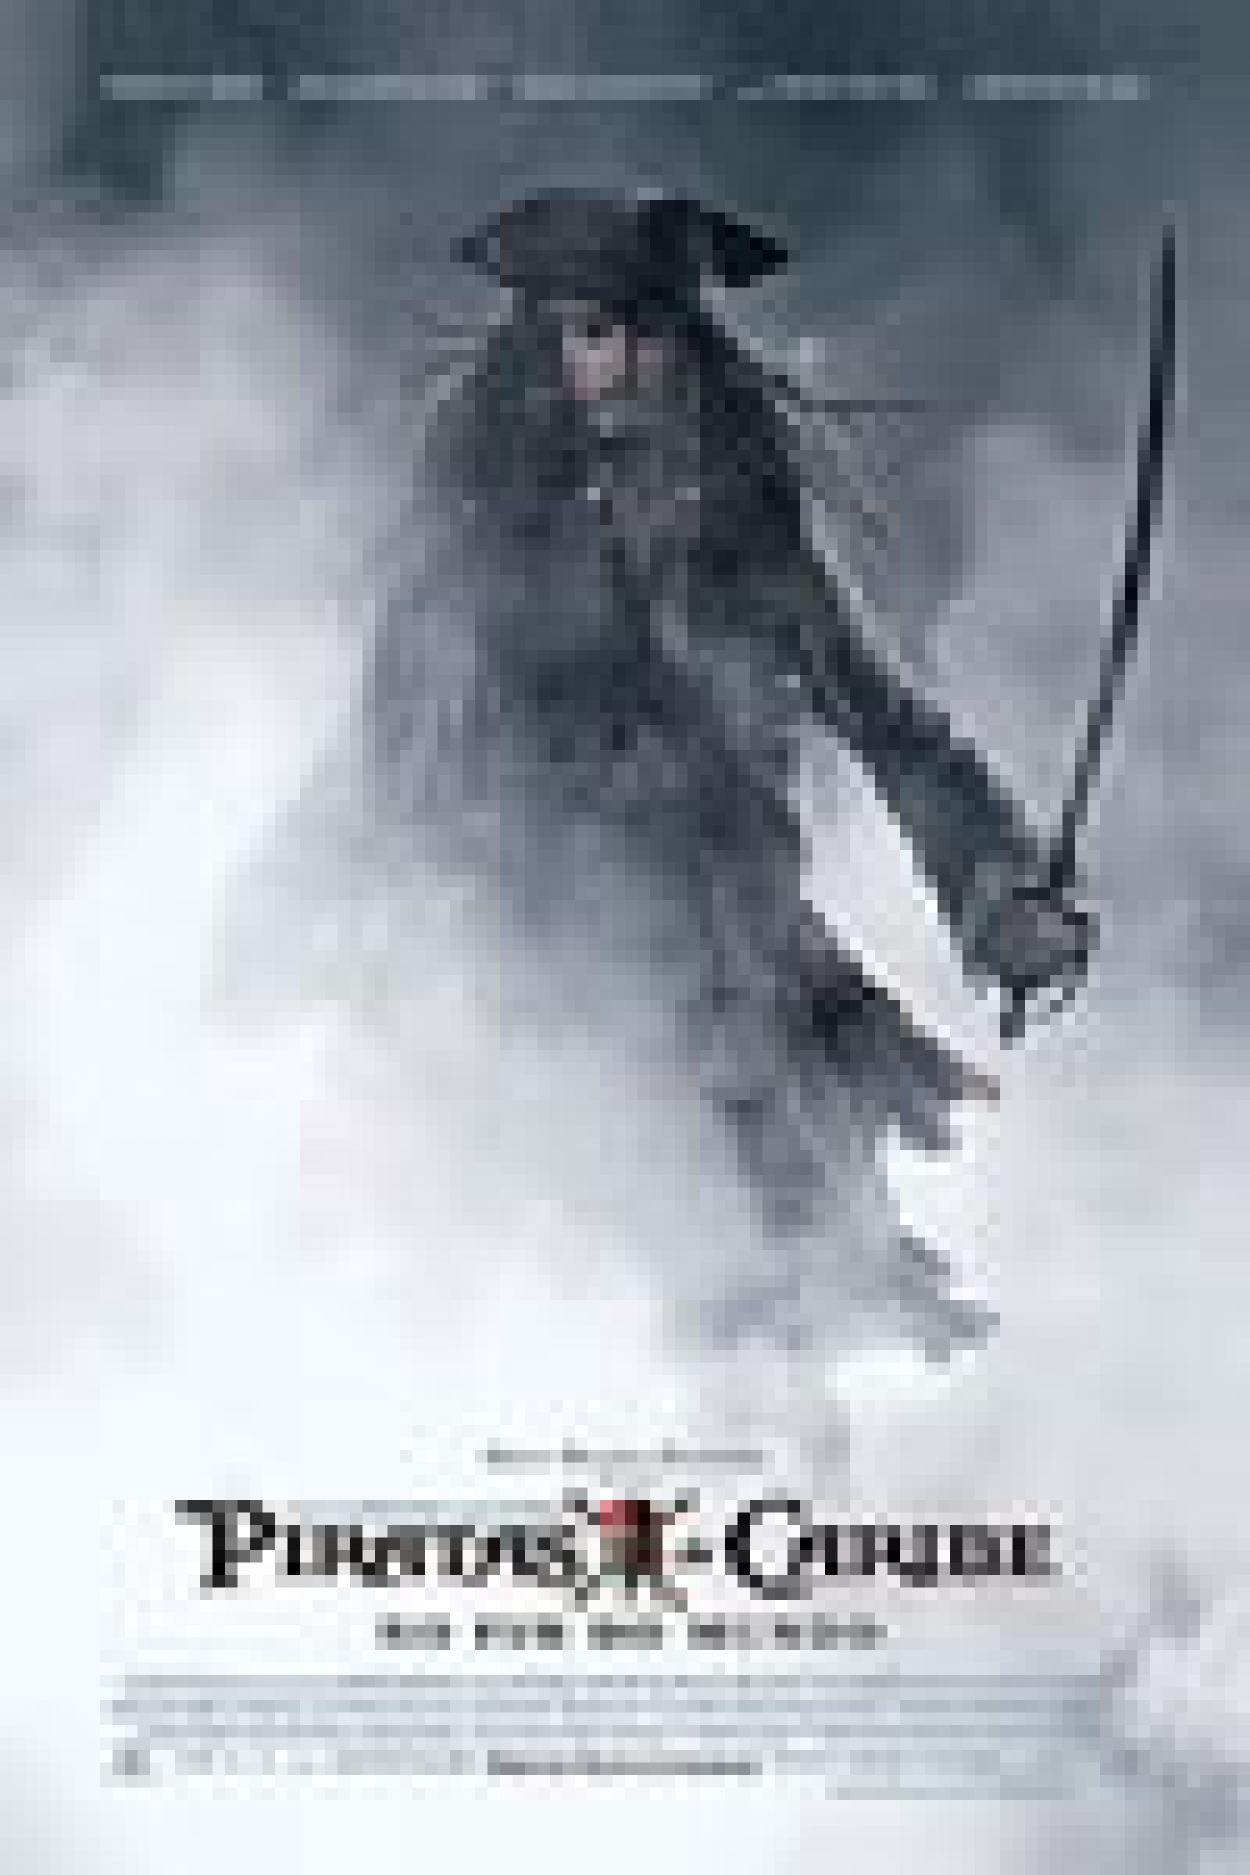 Piratas Pirados! (Filme), Trailer, Sinopse e Curiosidades - Cinema10